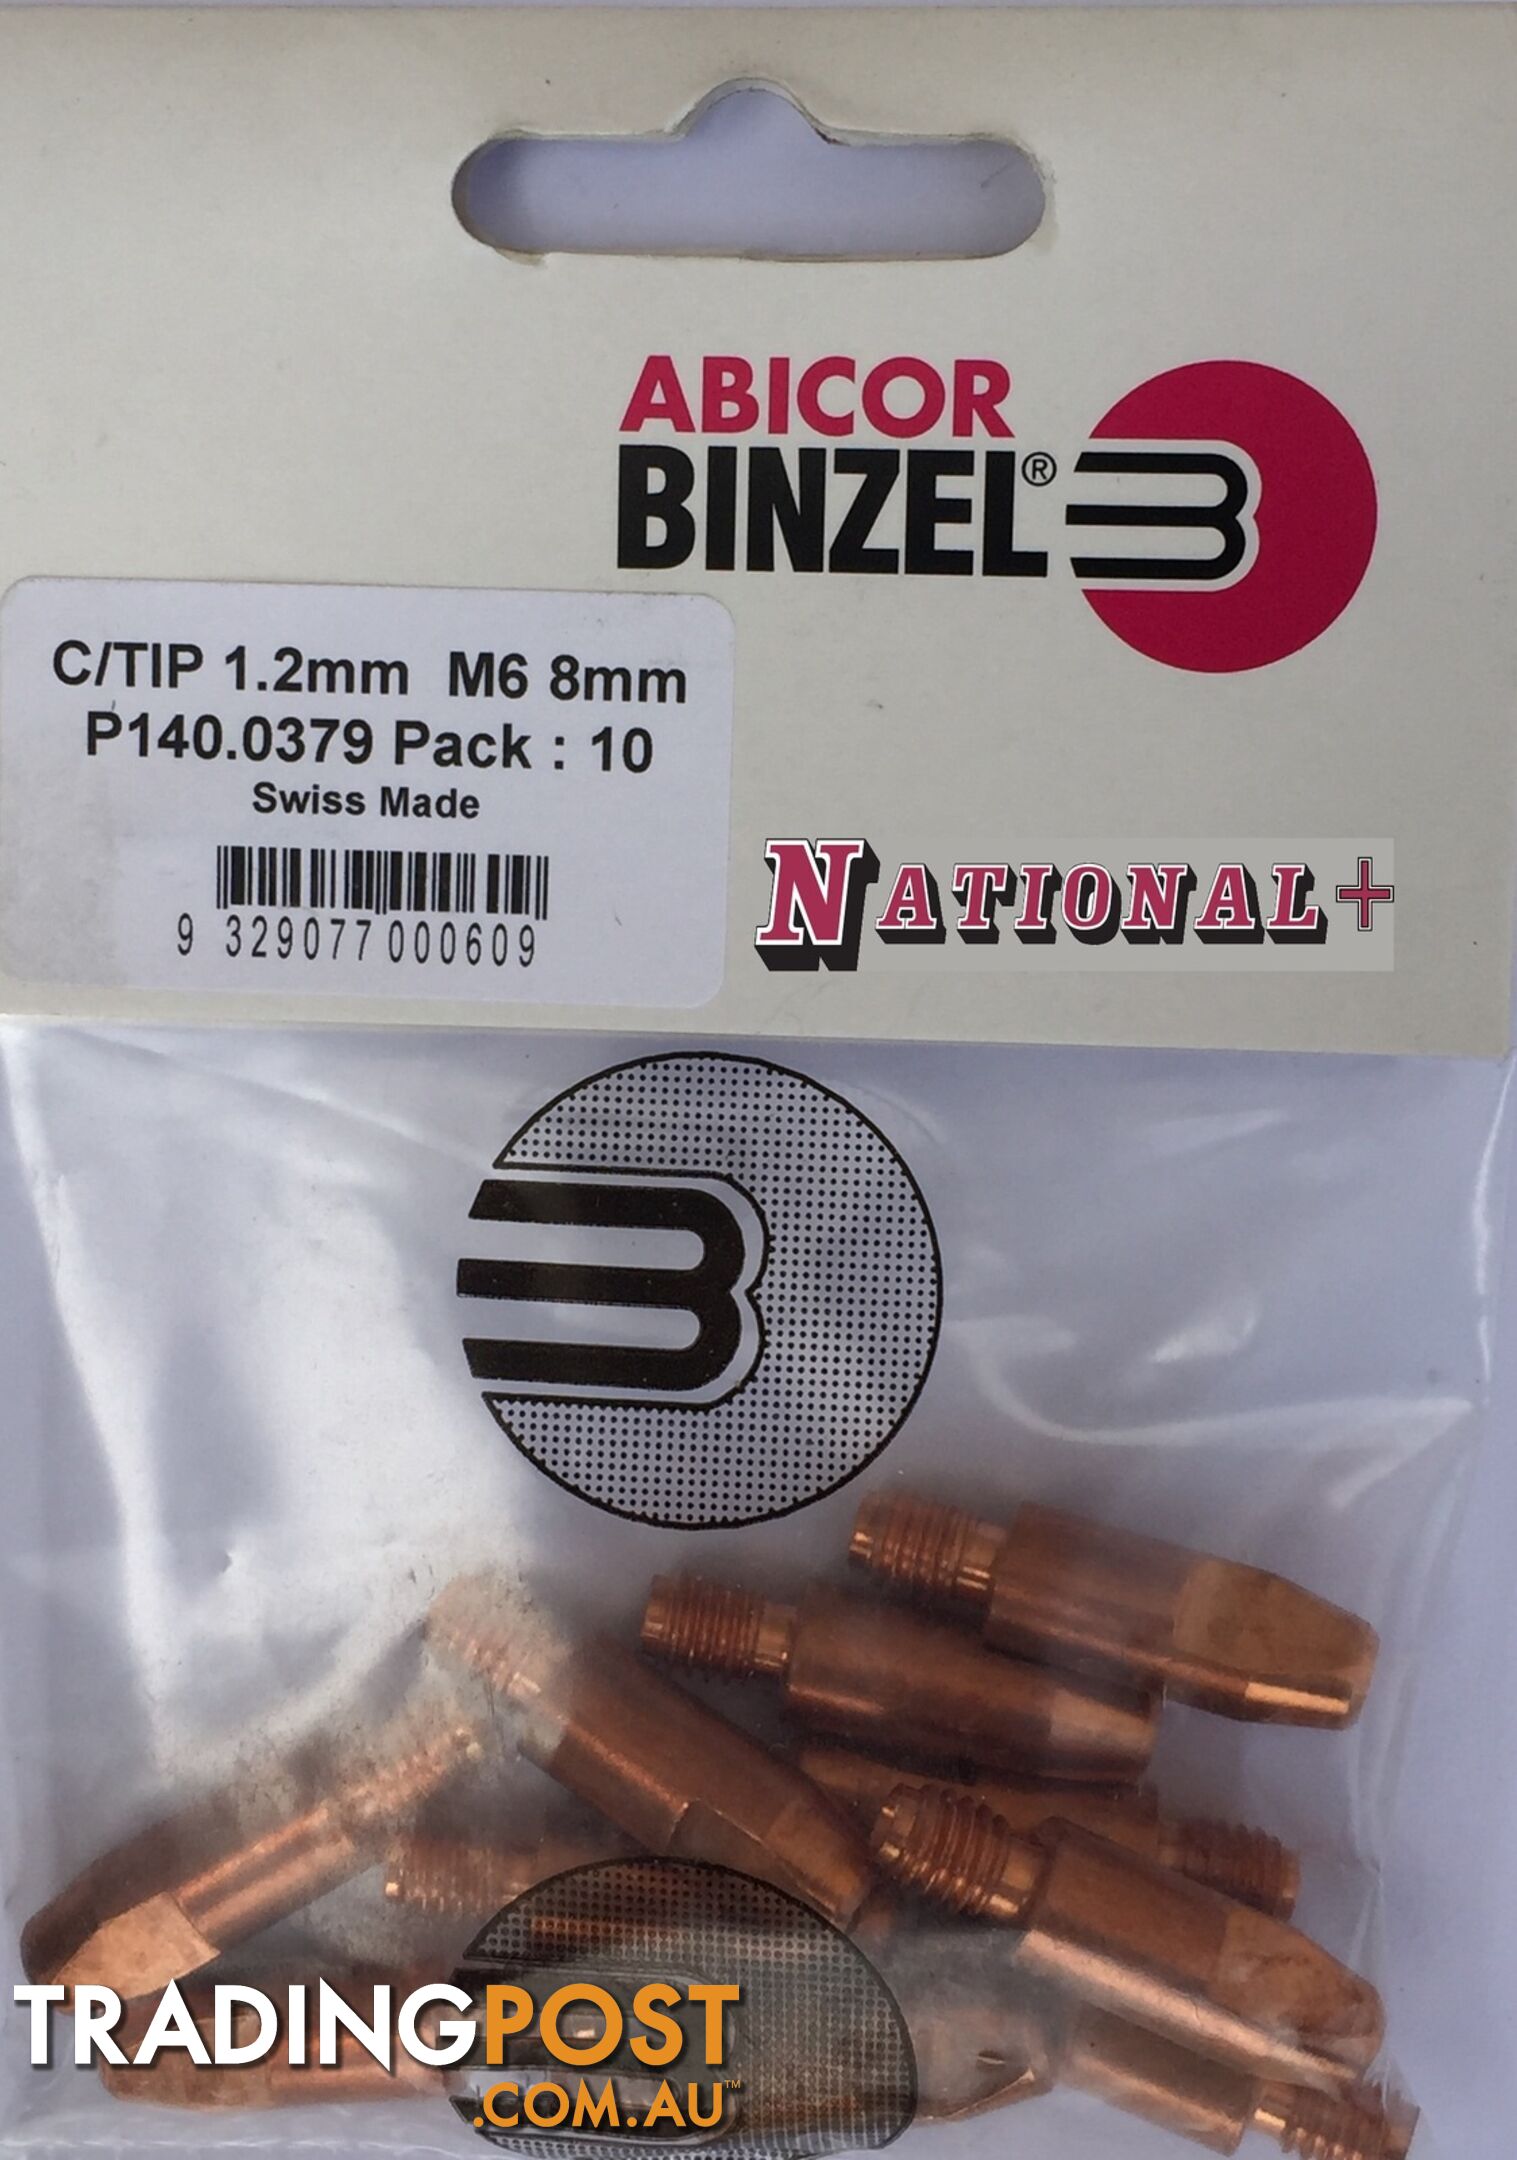 0.6mm Steel M6 8mm 28mm Binzel contact tip Pk: 10 P140.0005